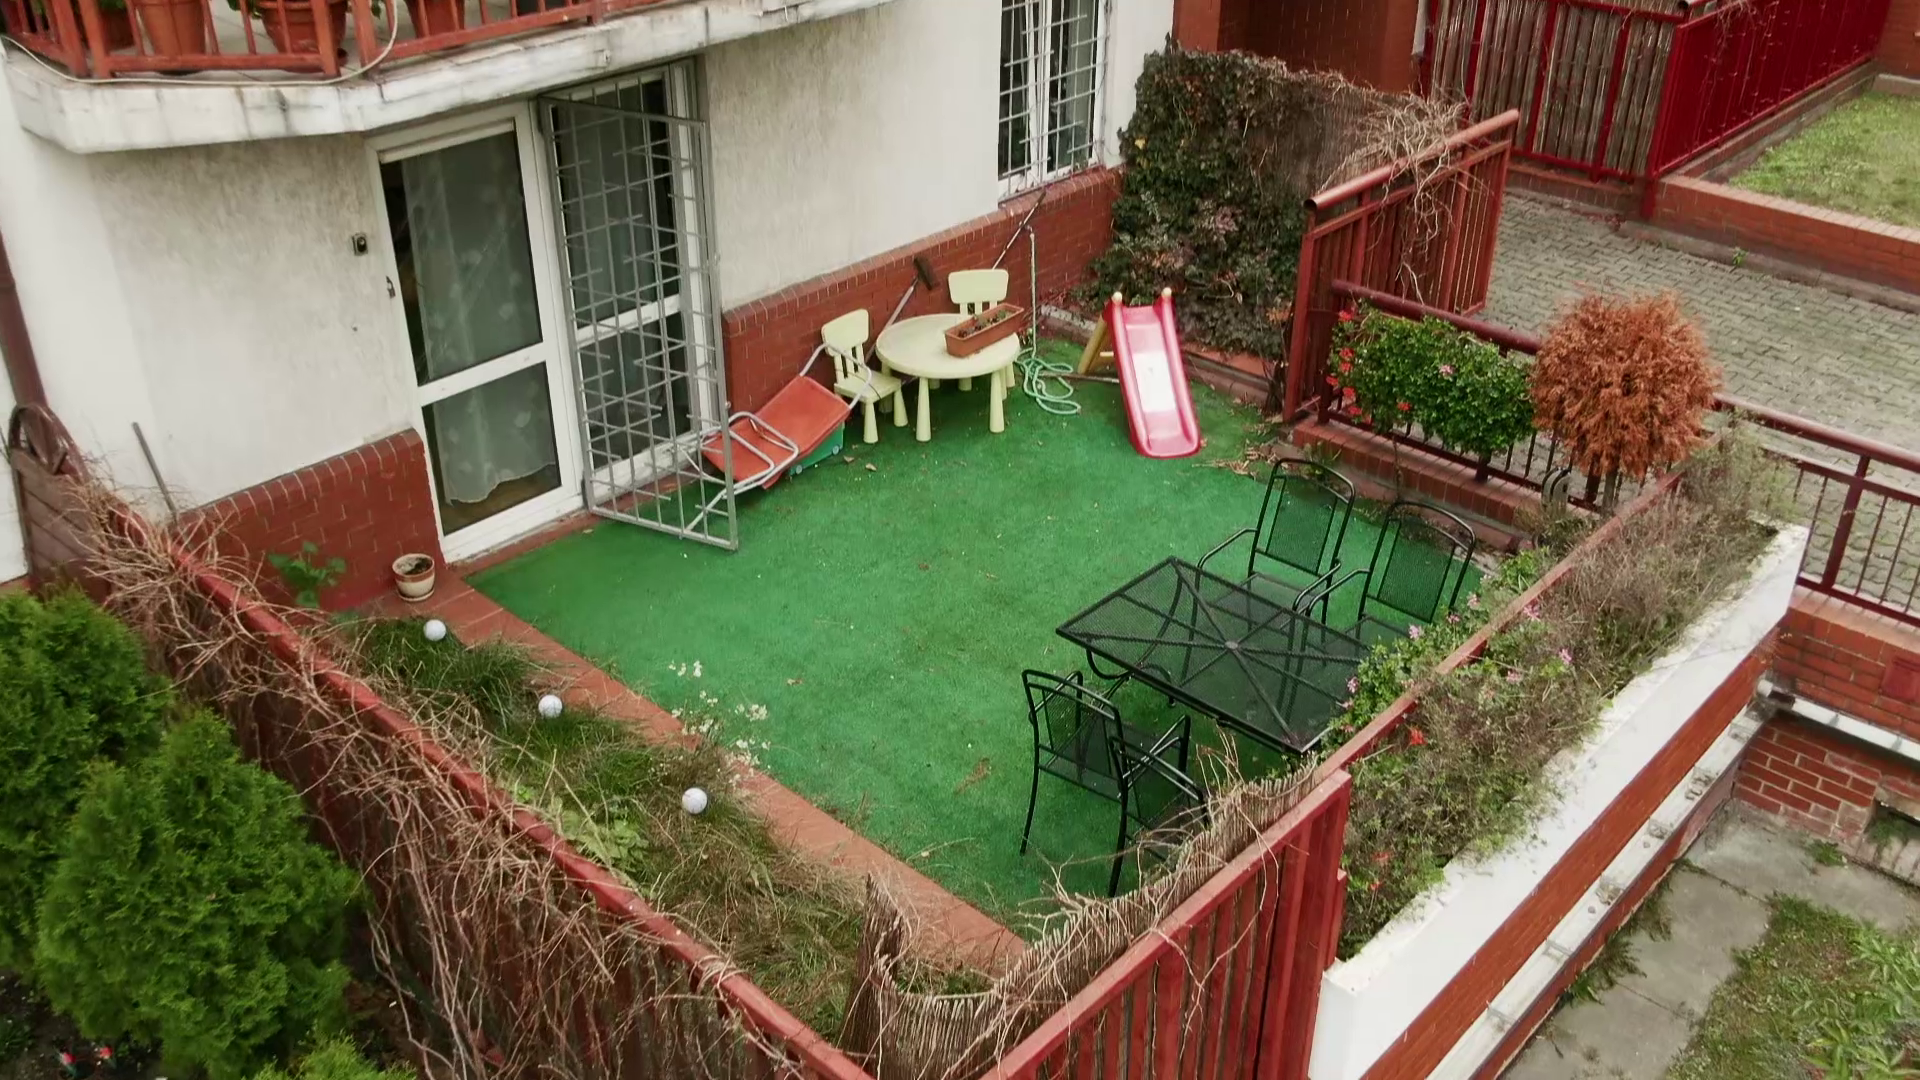 "Polowanie na ogród - tarasy": stylowy salon z widokiem na brzydki taras